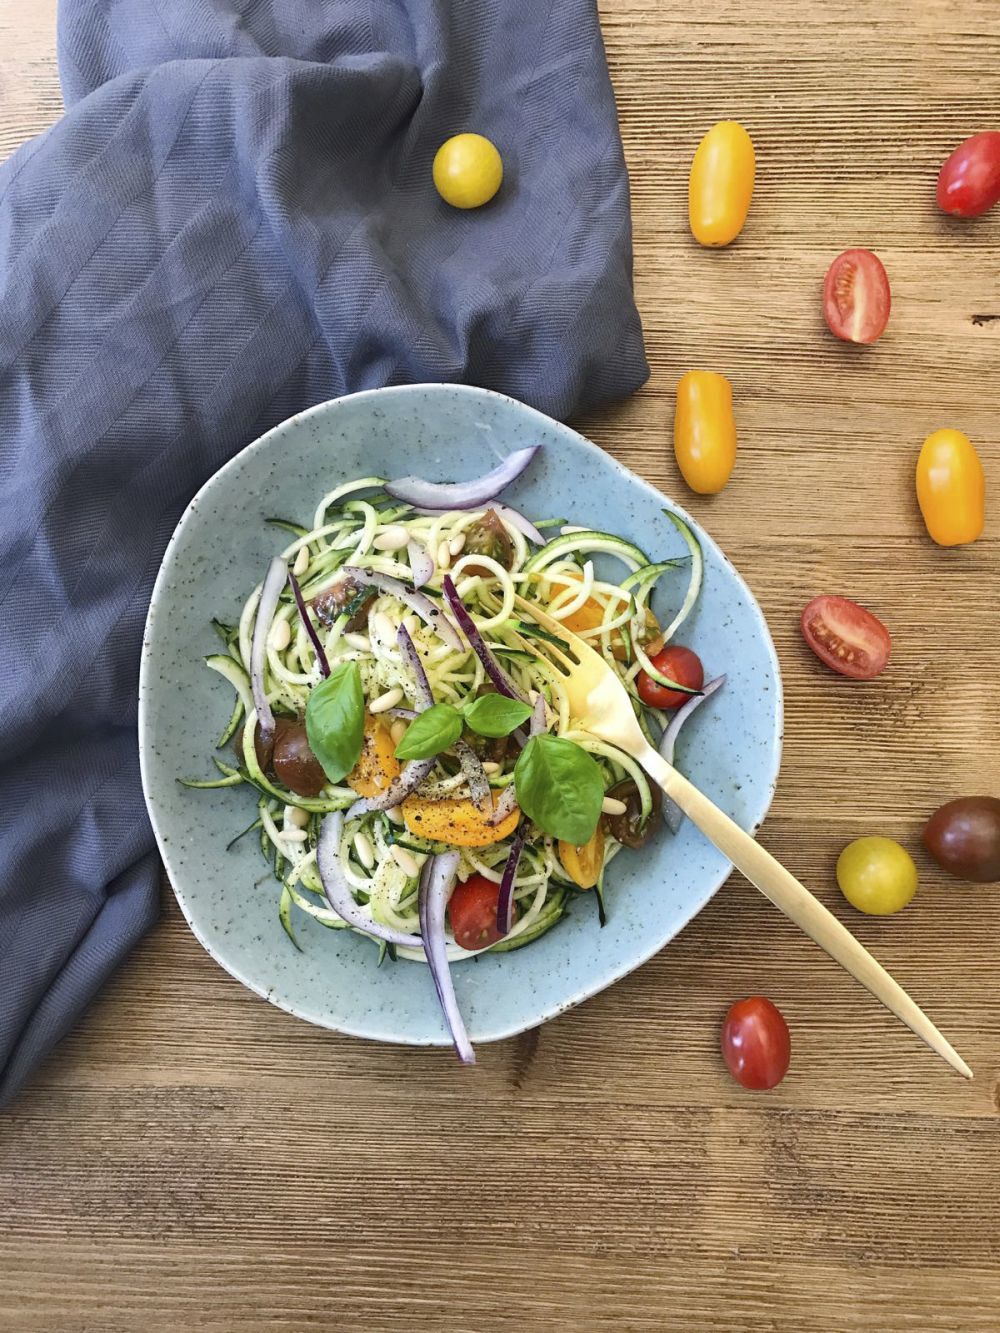 Los spaguettis de calabacín también pueden ser una buena opción para cenar ligero con tus ingredientes favoritos.